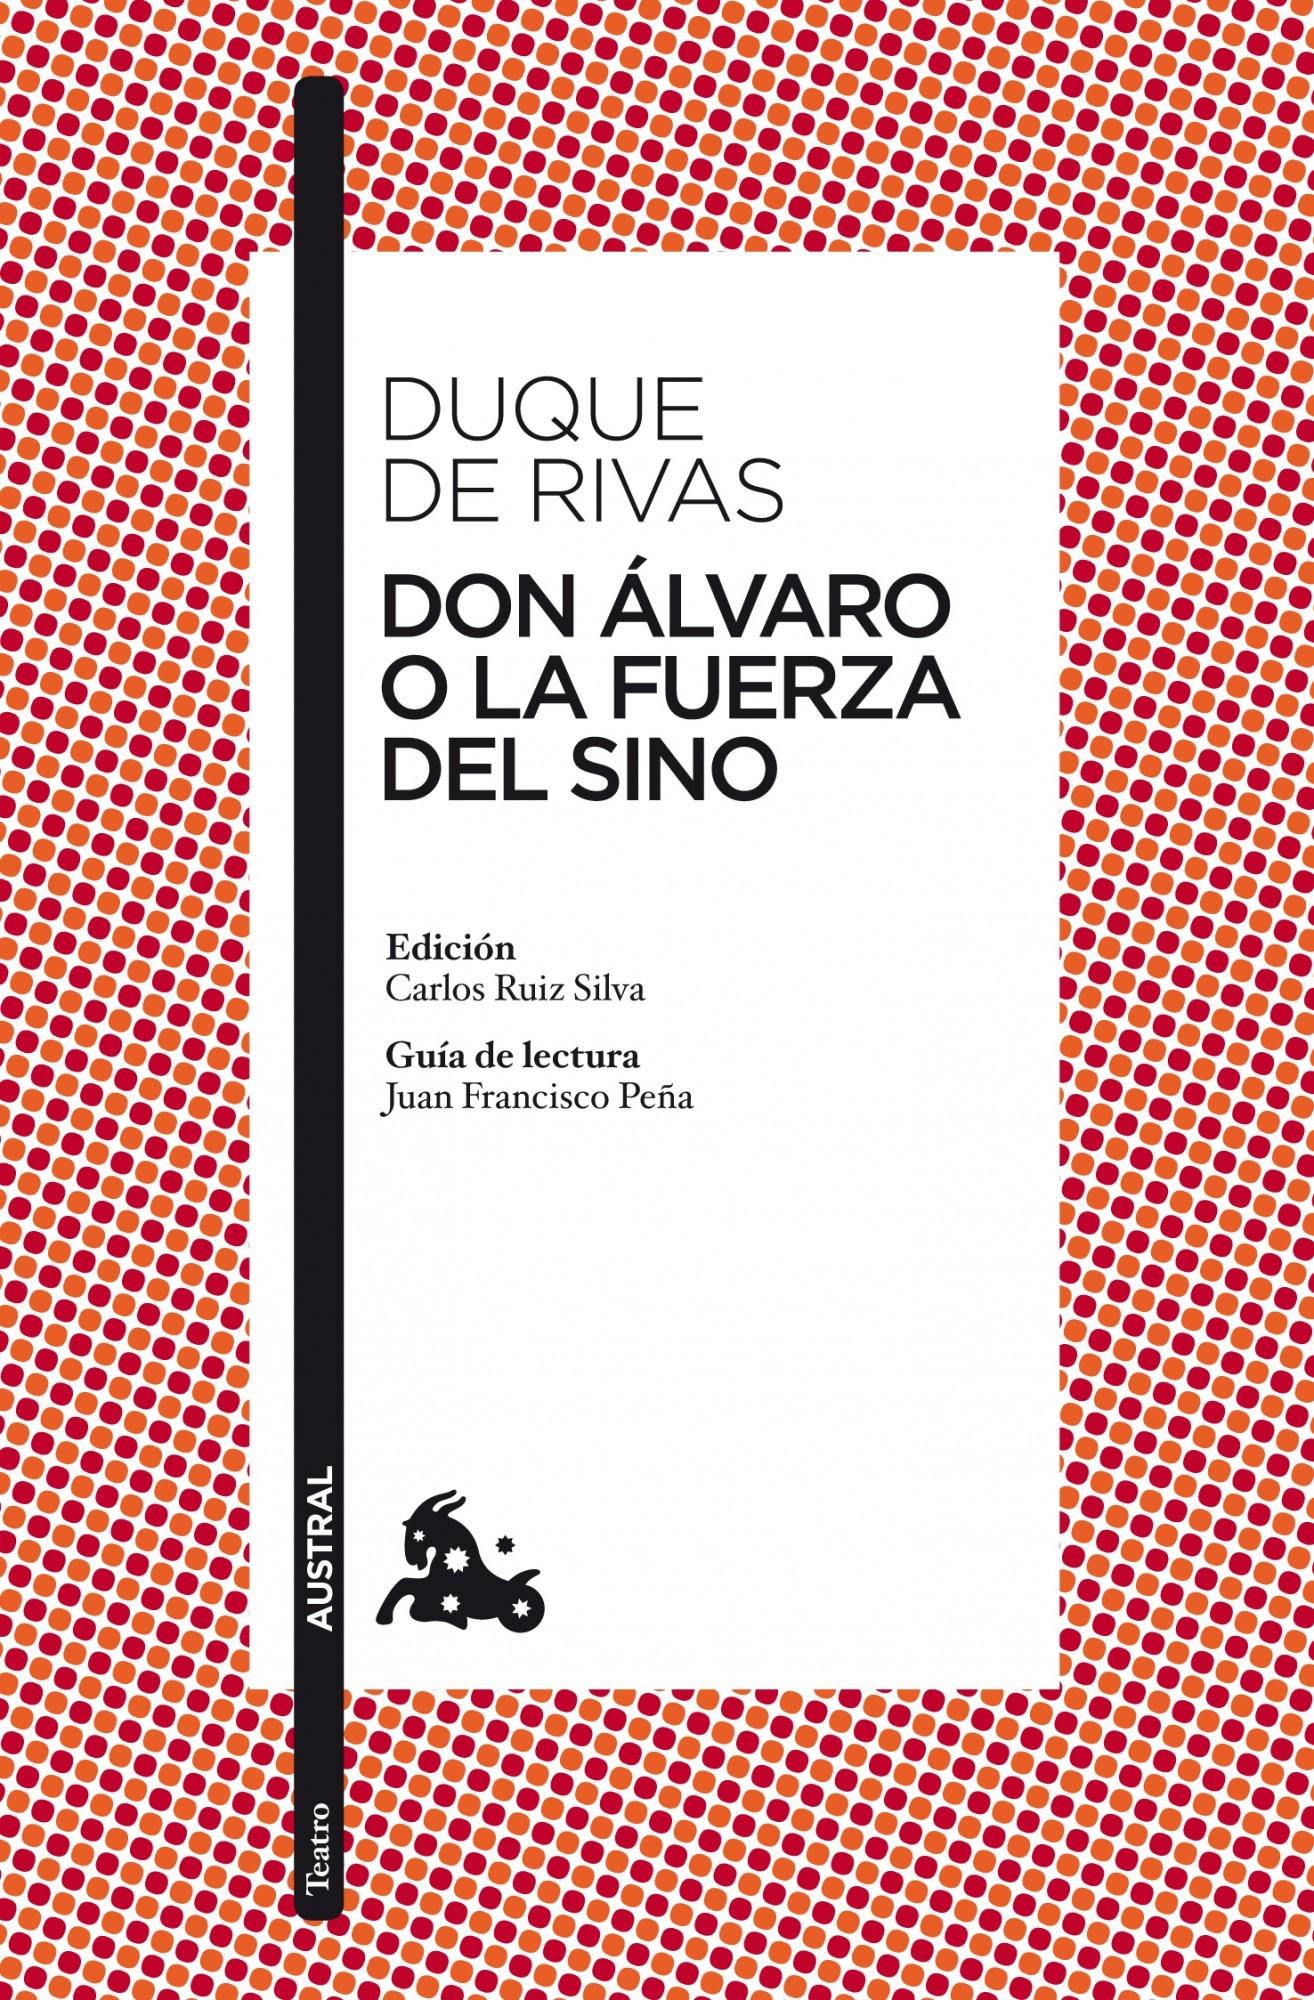 Don Álvaro o la Fuerza del Sino "Edición de Carlos Ruiz Silva. Guía de Lectura de Juan Francisco Peña"